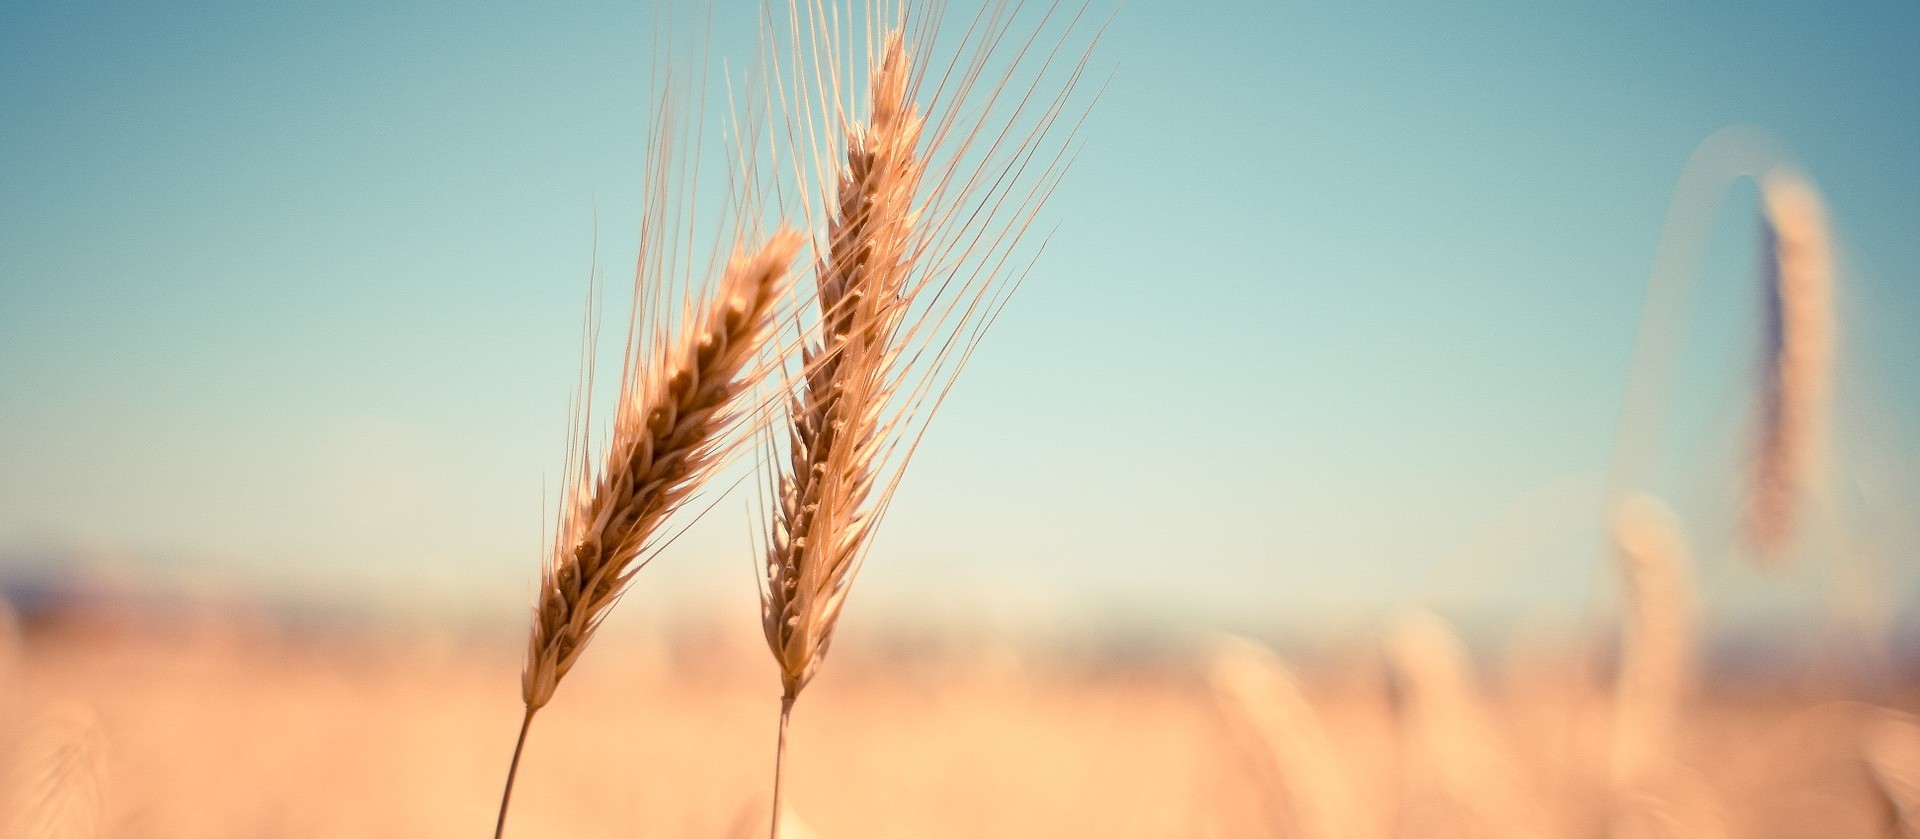 Deral estima produção de trigo do Paraná em 3,6 milhões de toneladas